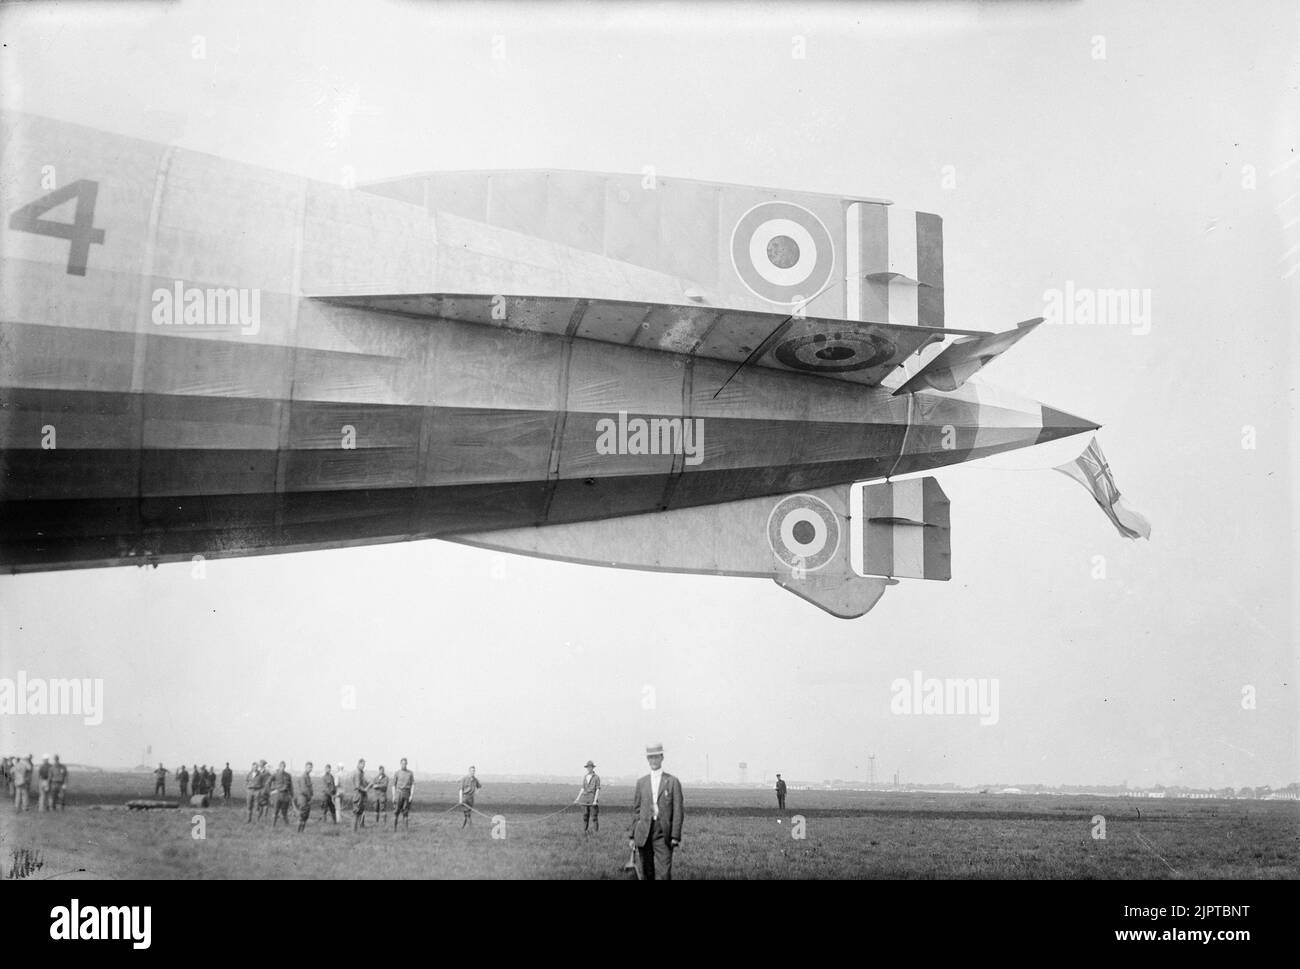 Der enorme Heckabschnitt des britischen Luftschiffs R34. Stockfoto